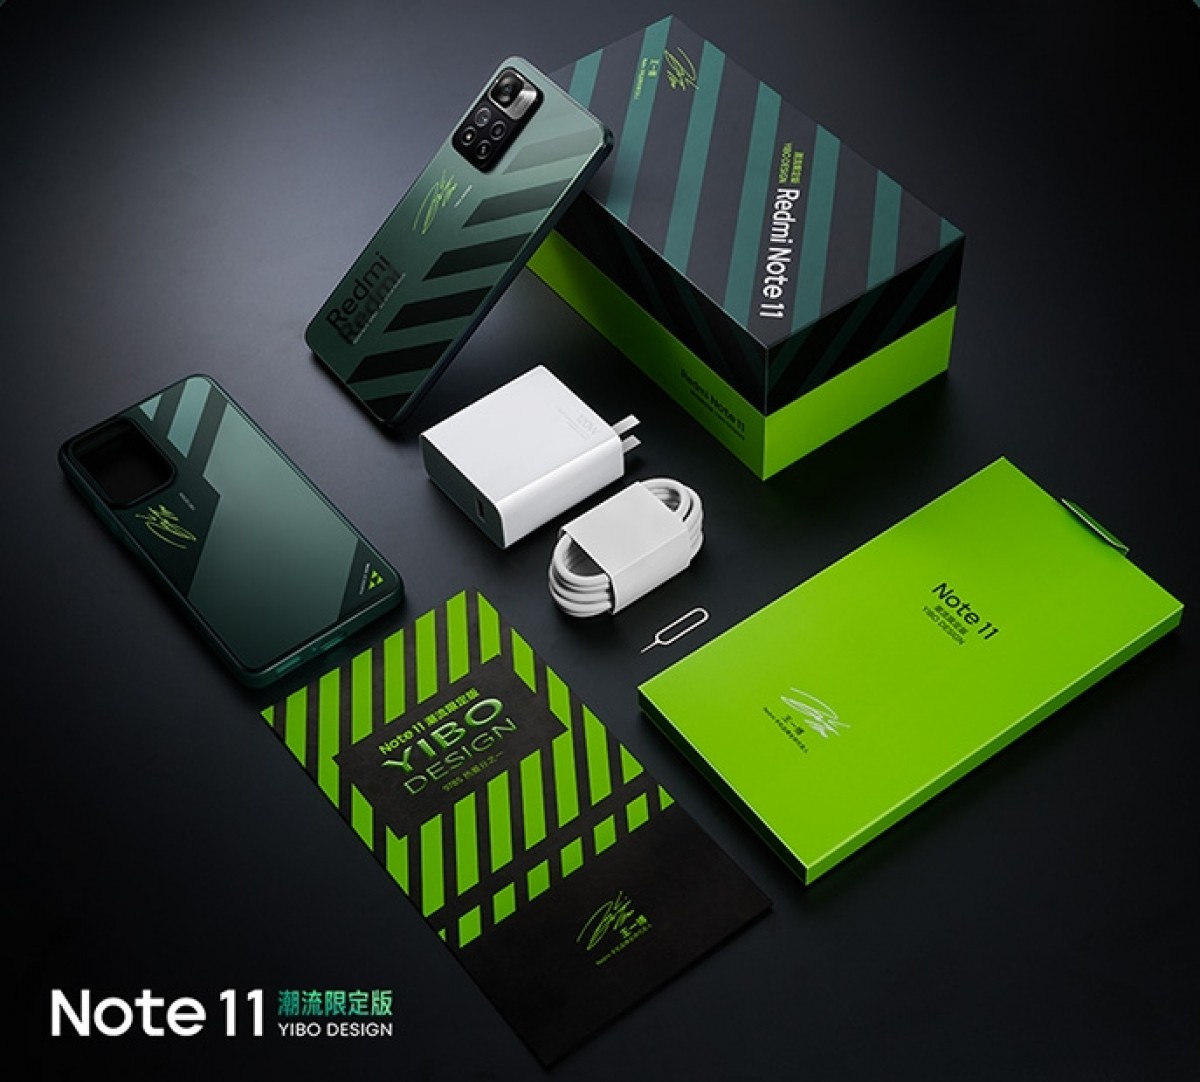 El Redmi Note 11 Pro+ recibe una versión especial de Yibo Design por 420 dólares